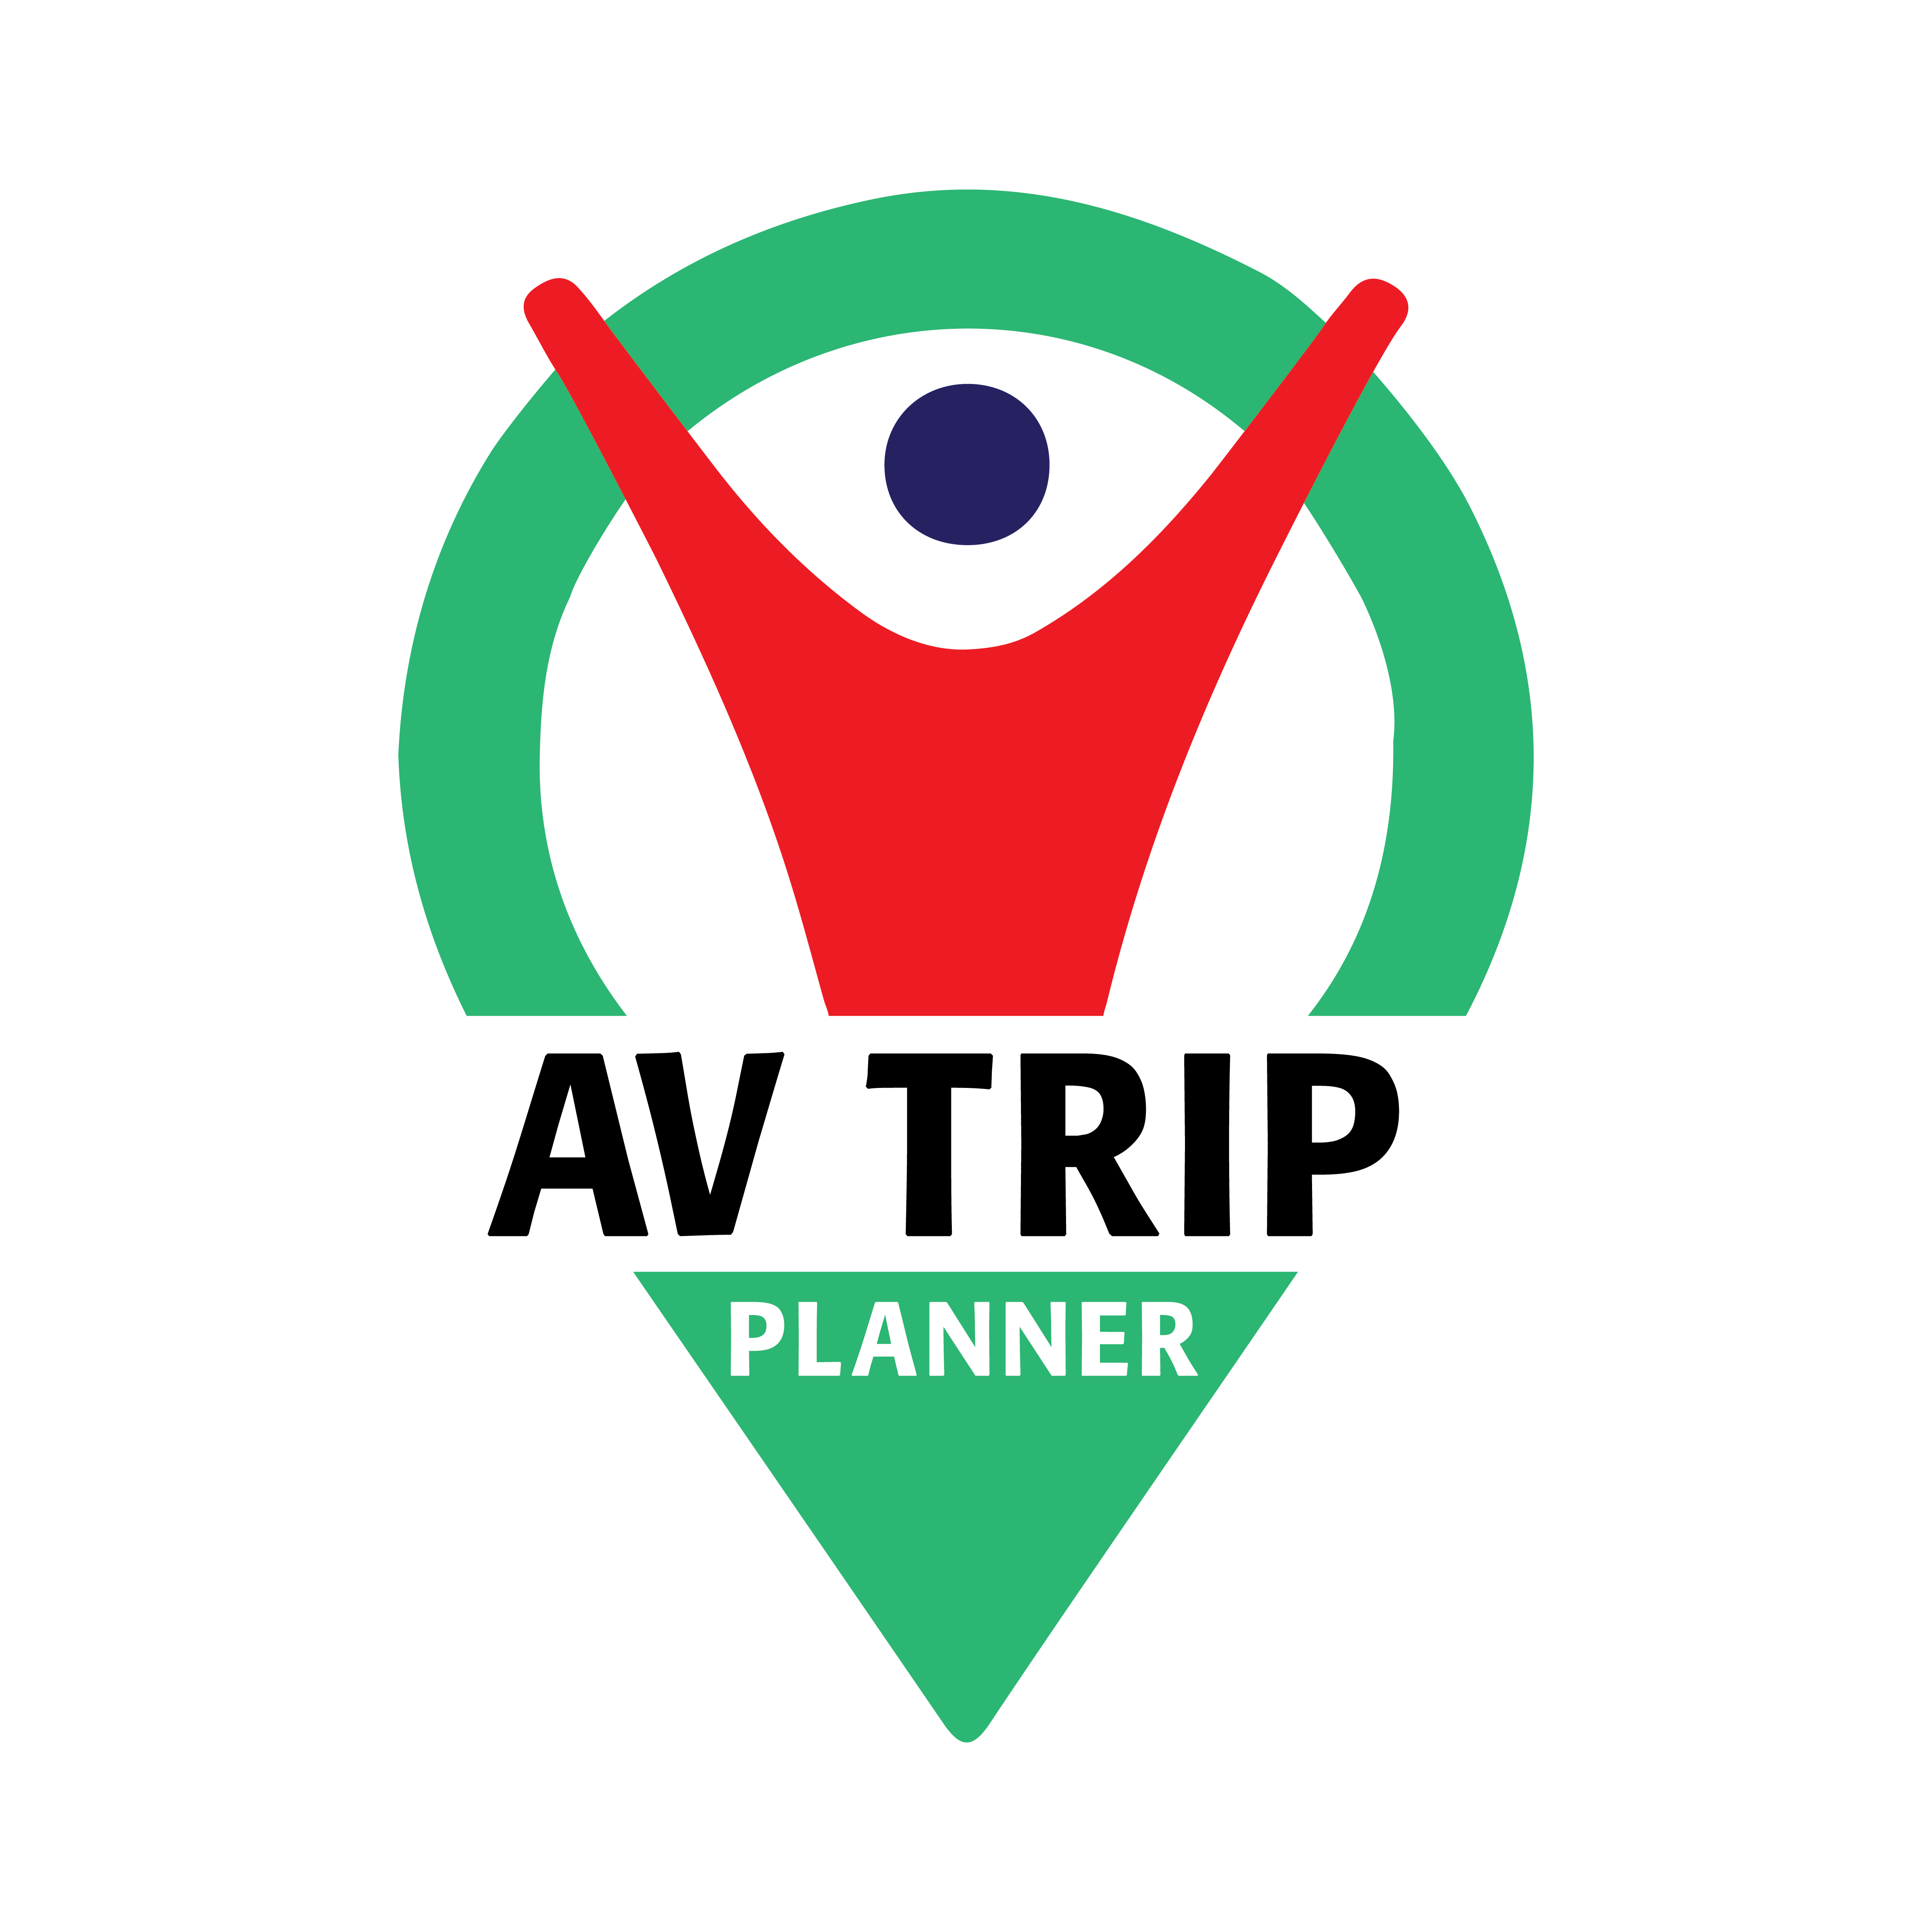 AV Trip Planner